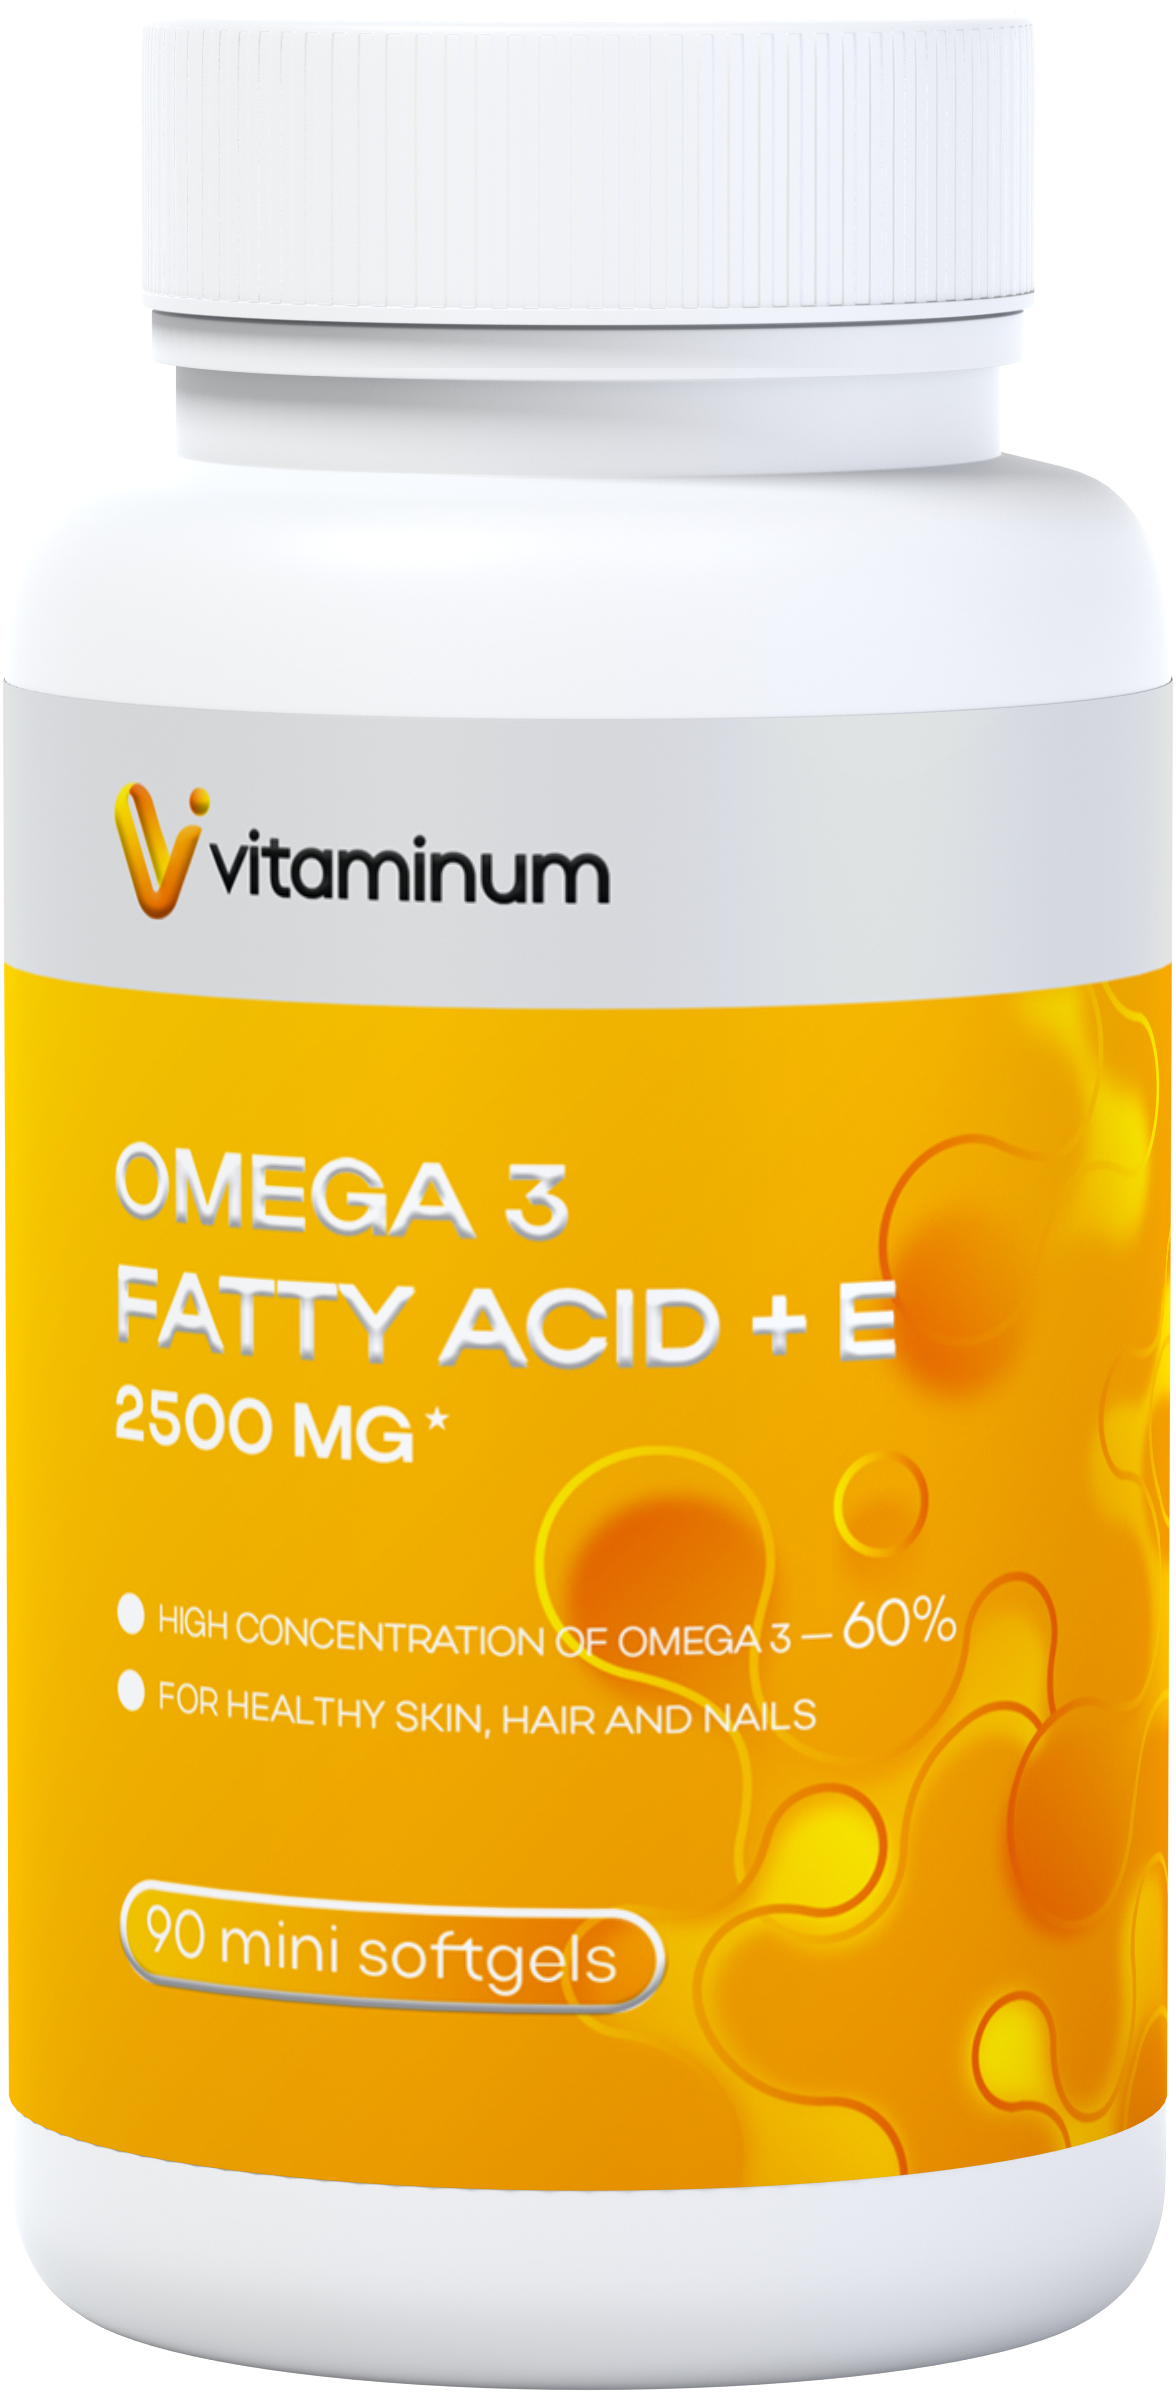  Vitaminum ОМЕГА 3 60% + витамин Е (2500 MG*) 90 капсул 700 мг   в Тюмени